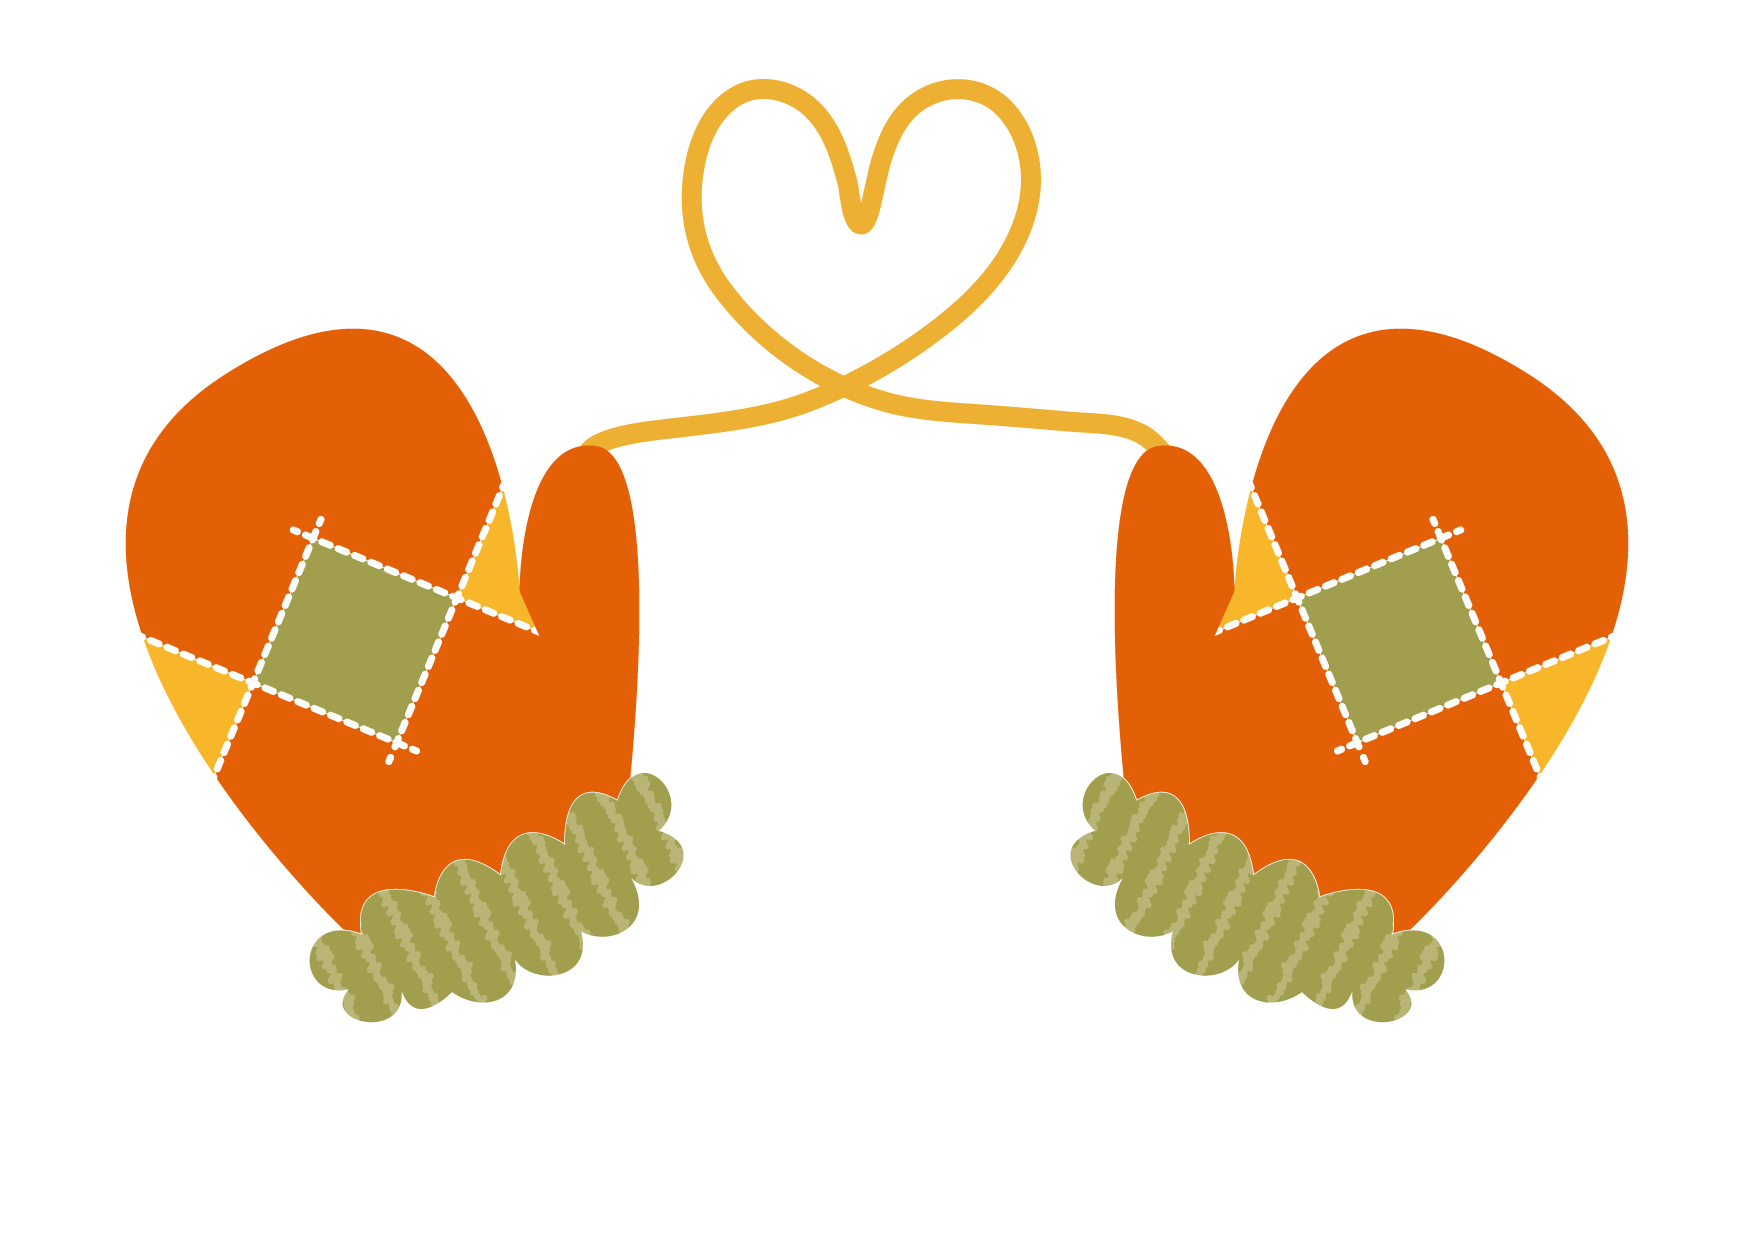 可愛いイラスト無料 手袋 ハート オレンジ色 Free Illustration Gloves Heart Orange 公式 イラスト ダウンロード